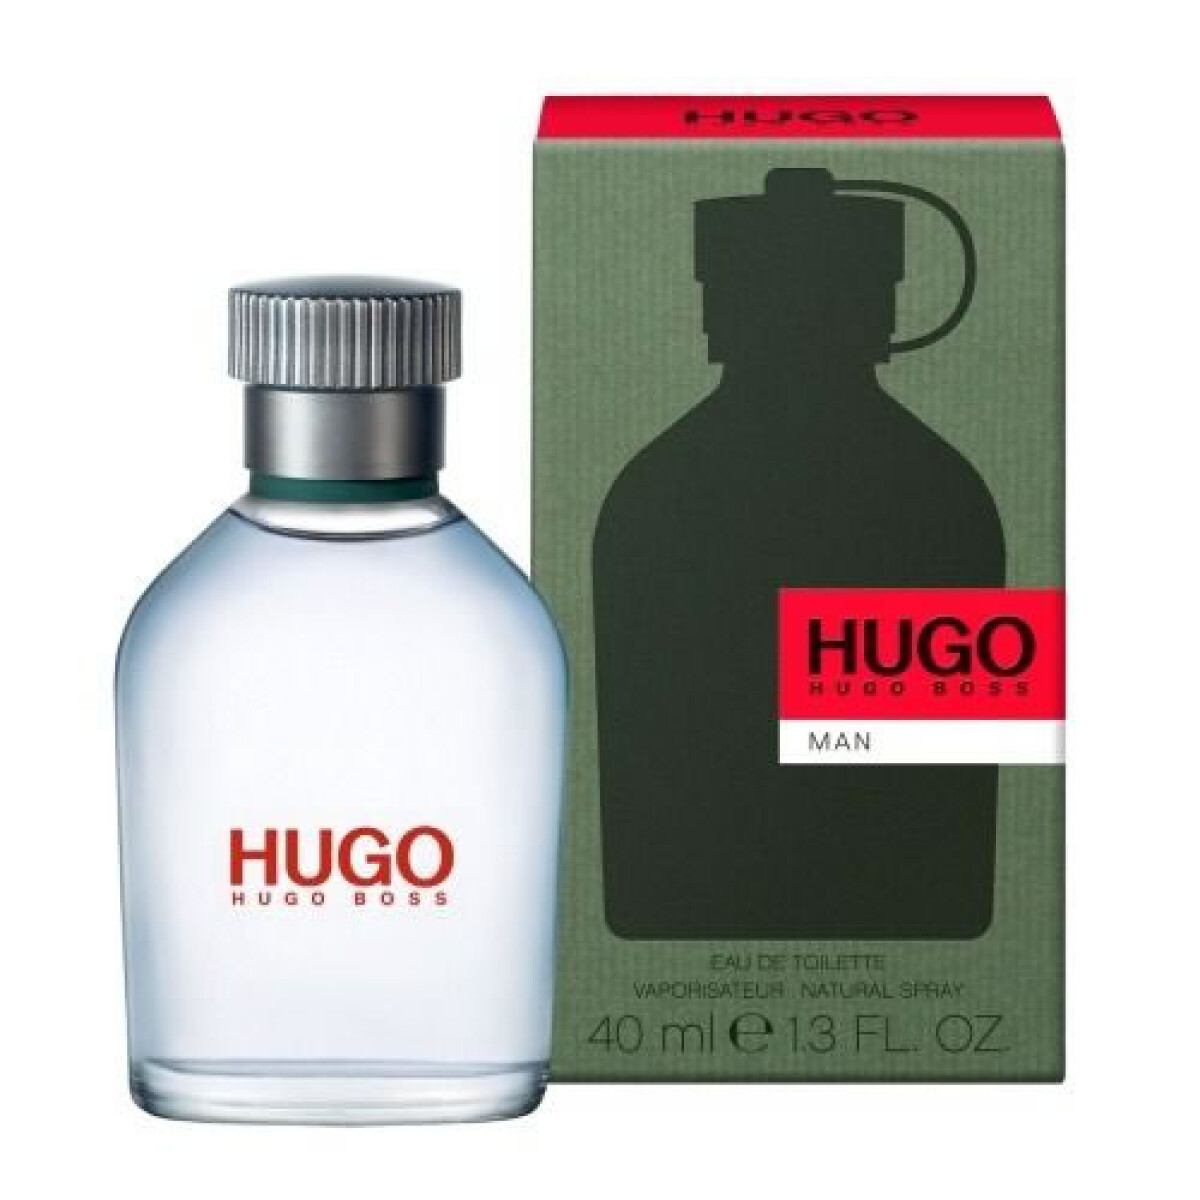 PERFUME HUGO BOSS MEN 40 ML 